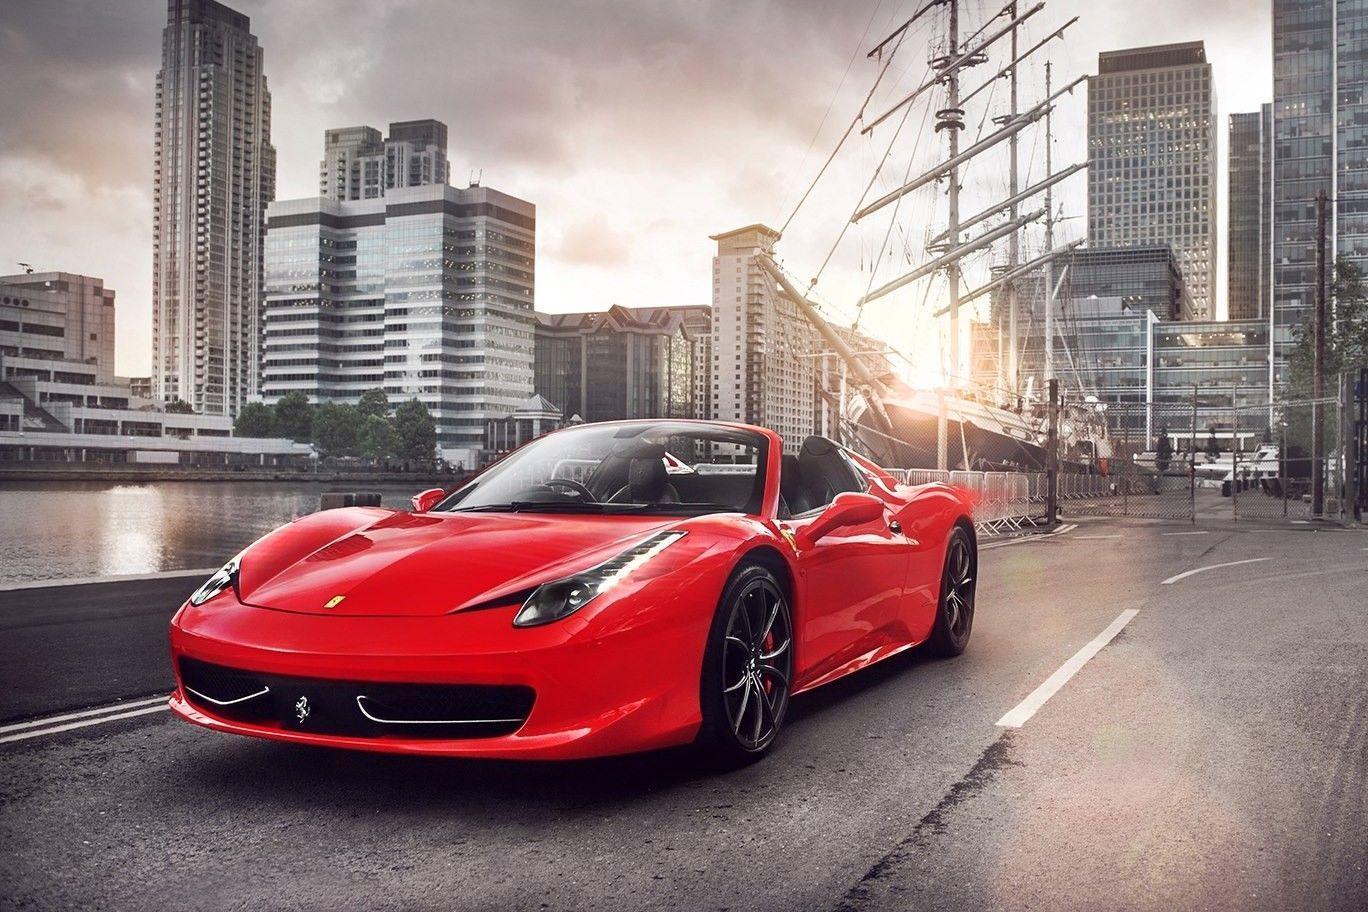 Hình nền siêu xe Ferrari cực chất  thptcandangeduvn